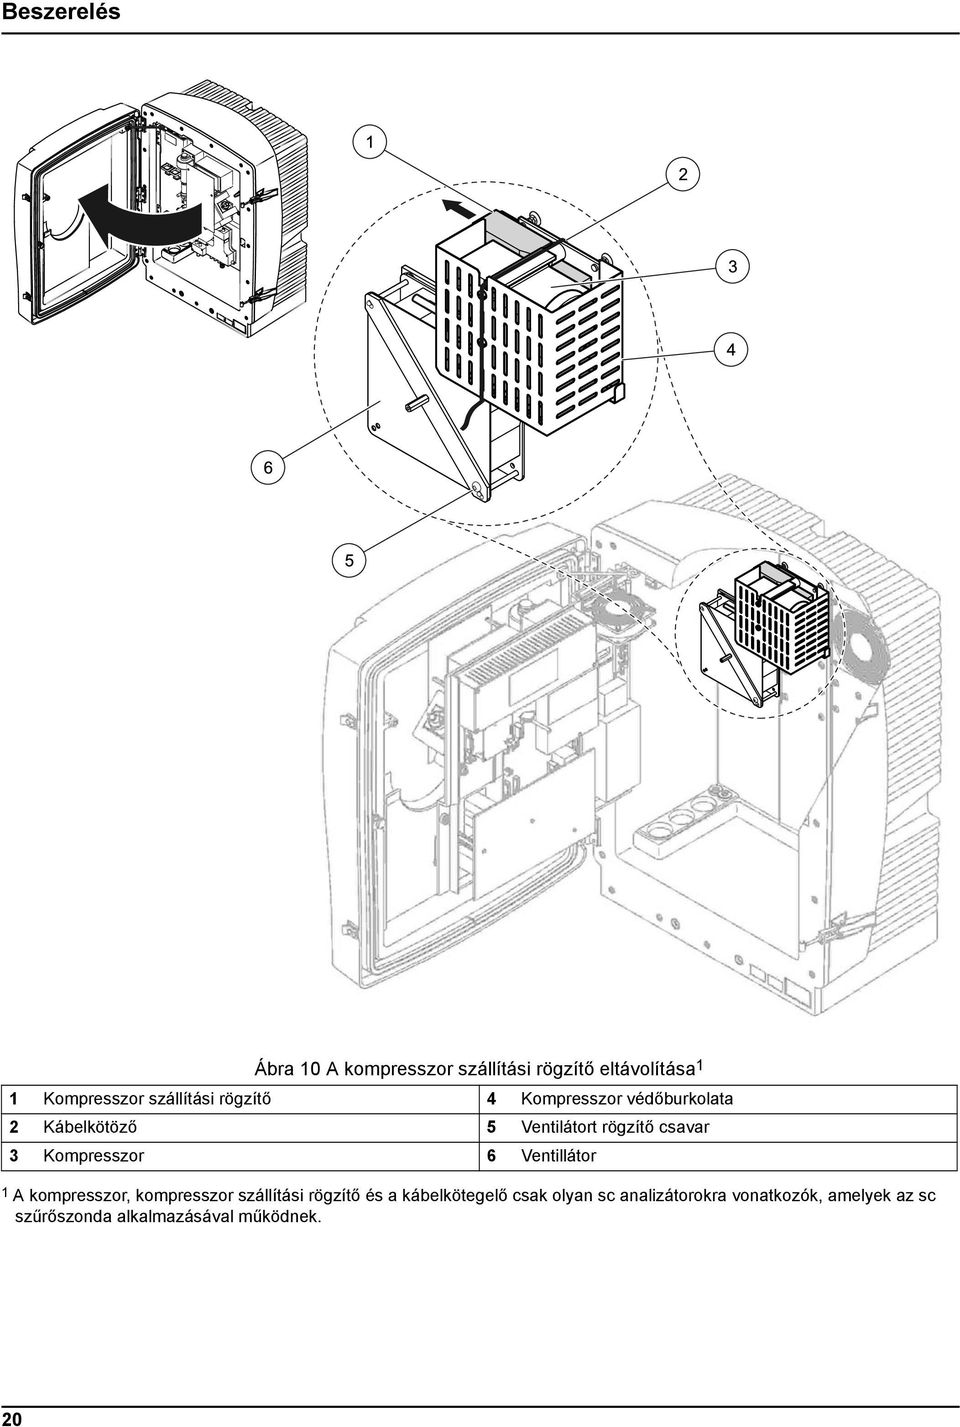 3 Kompresszor 6 Ventillátor 1 A kompresszor, kompresszor szállítási rögzítő és a